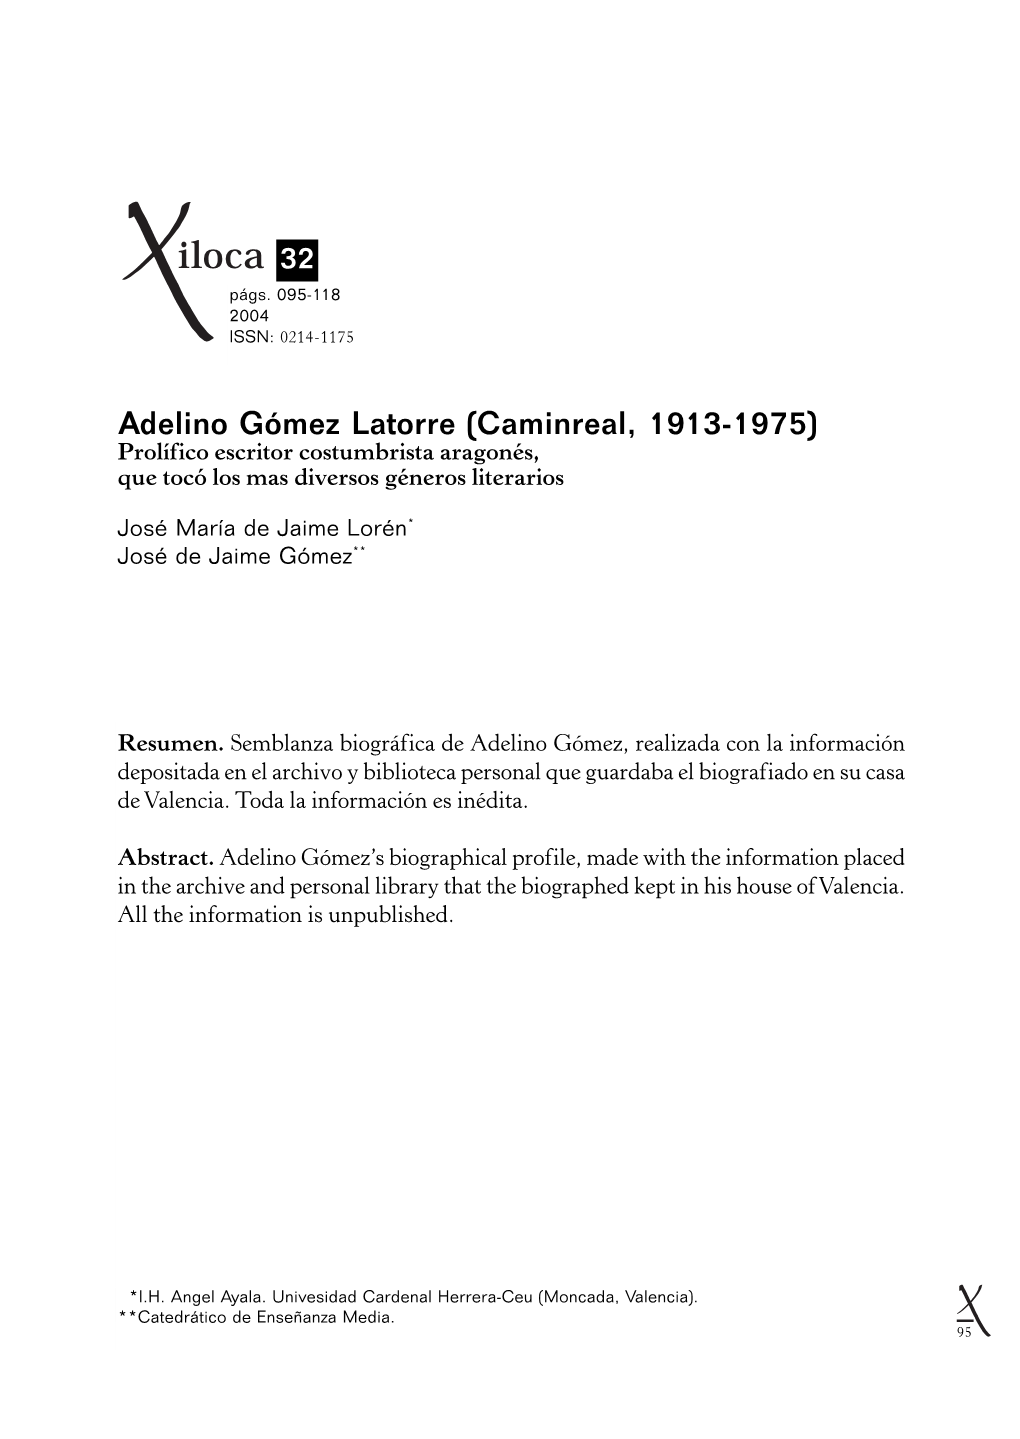 Adelino Gómez Latorre (Caminreal, 1913-1975) Prolífico Escritor Costumbrista Aragonés, Que Tocó Los Mas Diversos Géneros Literarios